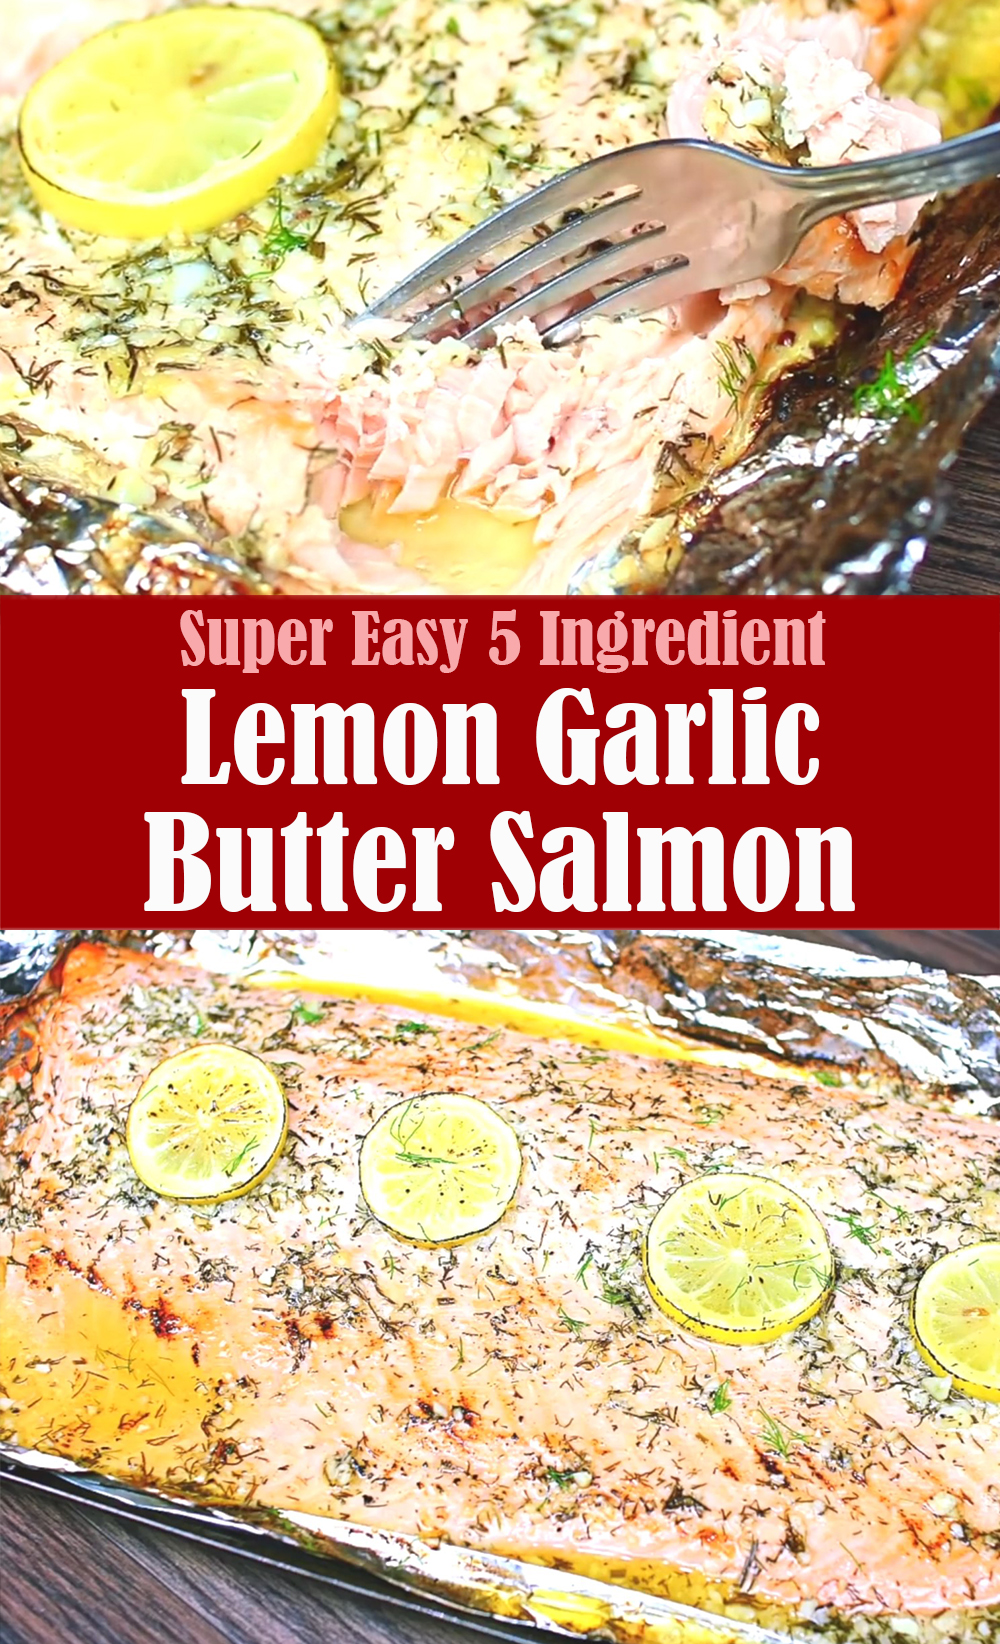 Super Easy Lemon Garlic Butter Salmon Recipe